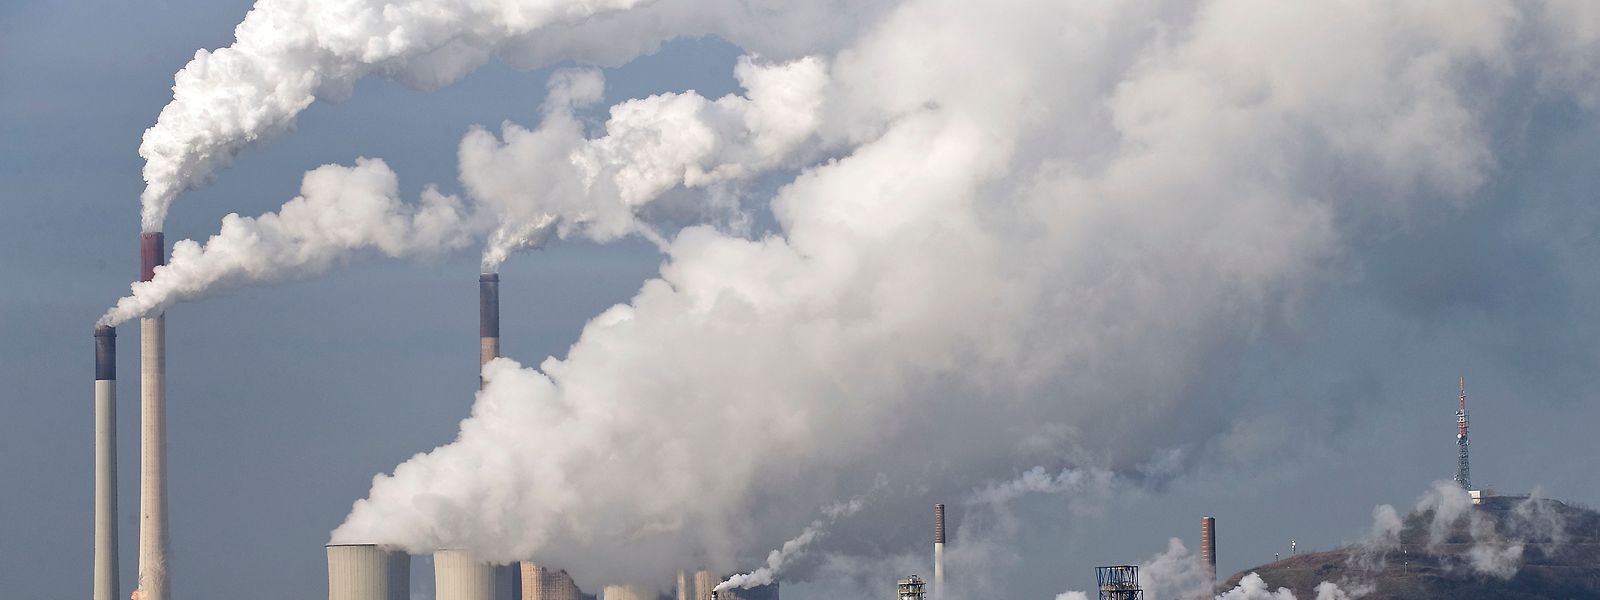 Energieerzeuger, Stahlbranche und Zementhersteller zahlen schon für Kohlendioxid-Emissionen – eine allgemeine CO2-Abgabe würde auch den  Bürger direkt treffen.